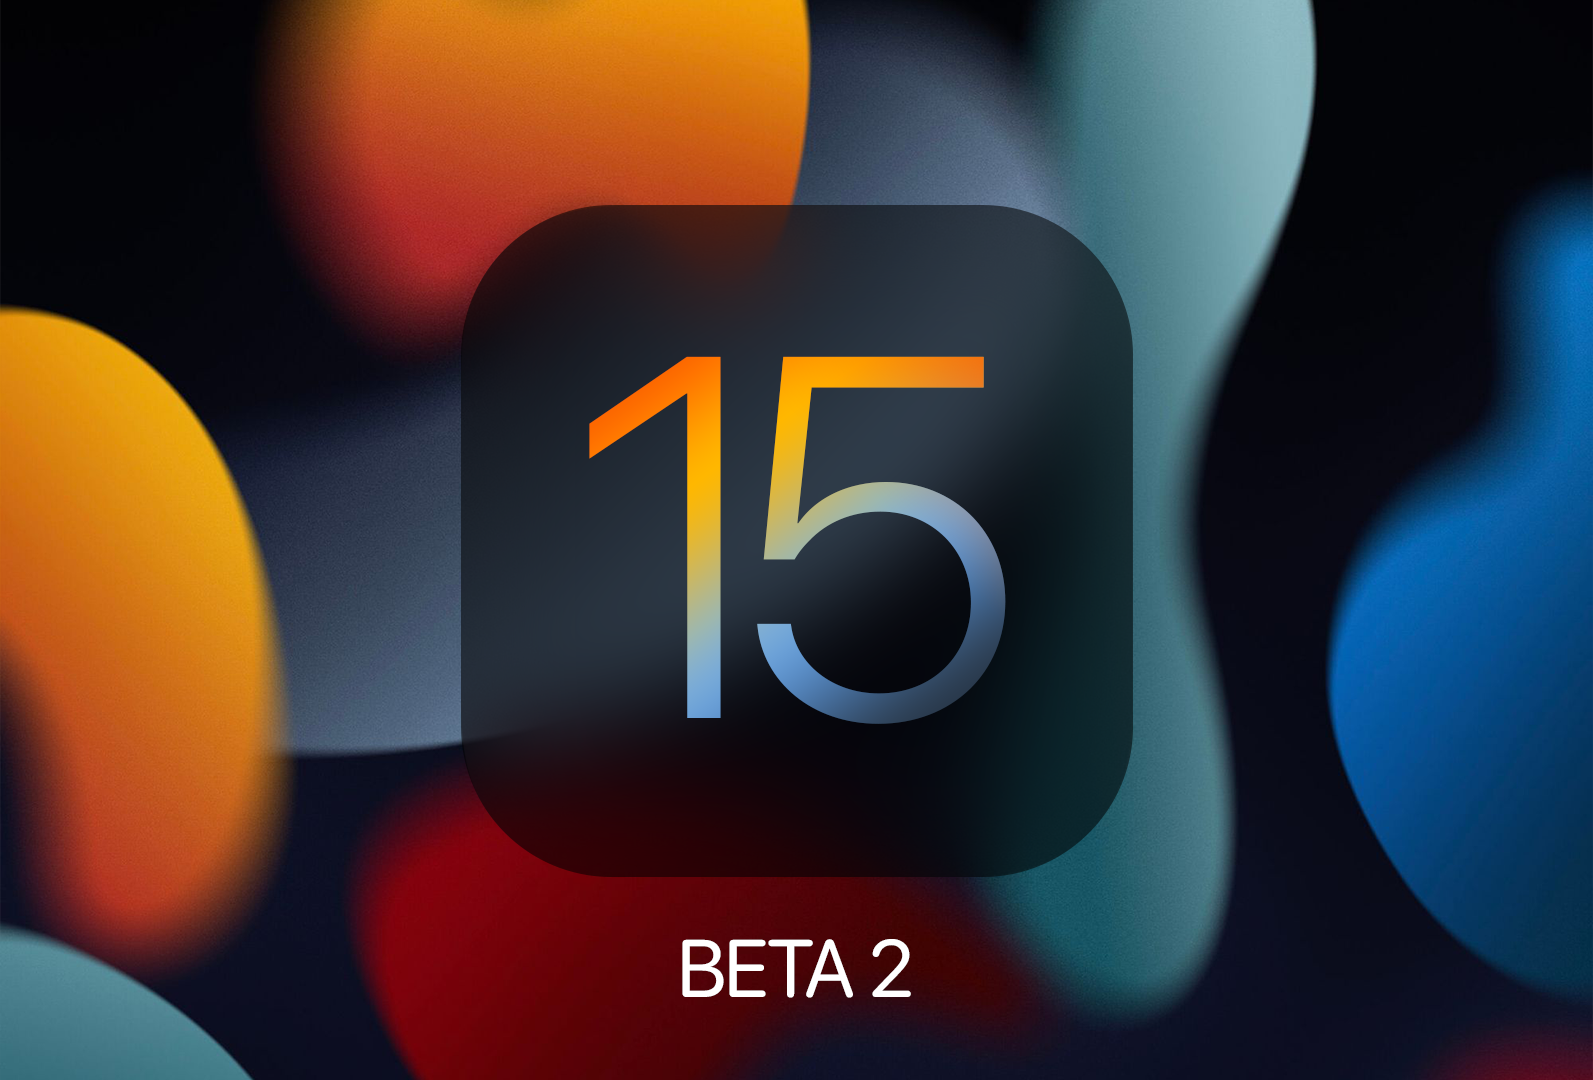 Apple lança beta 2 do iOS 15 e iPadOS 15. O que há de novo?